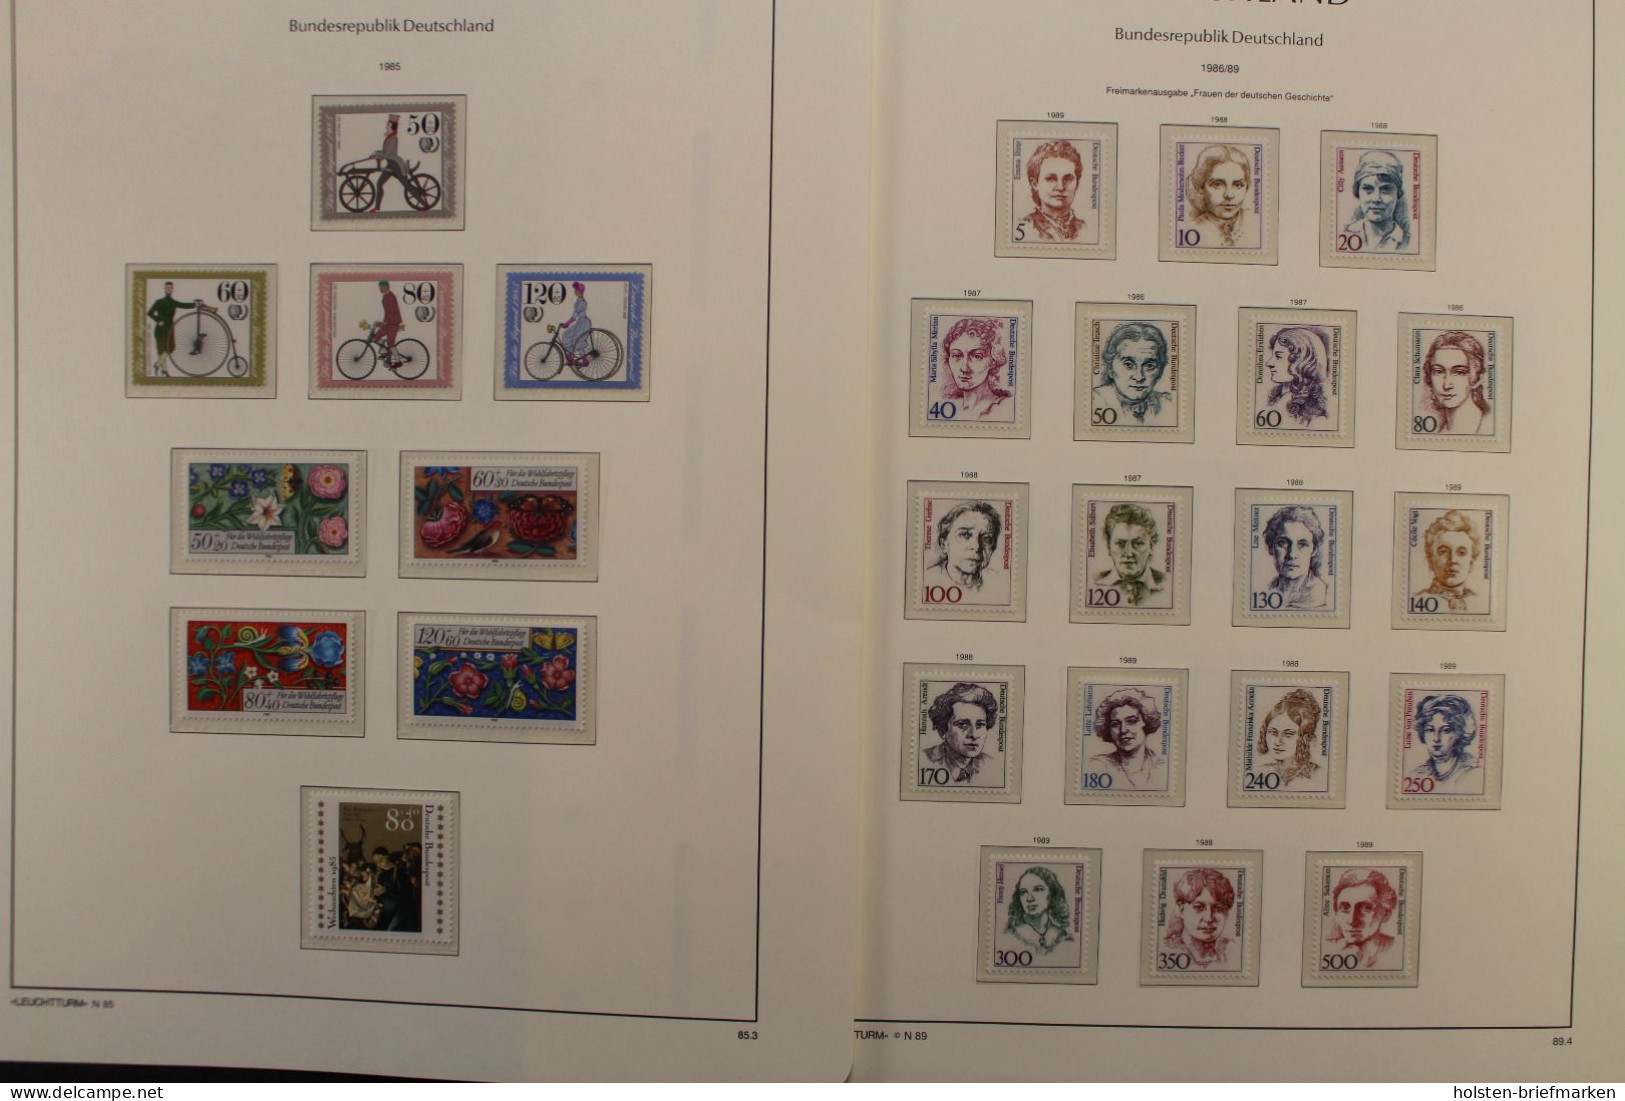 Deutschland (BRD) 1970-1990 postfrische Sammlung, viele Besonderheiten